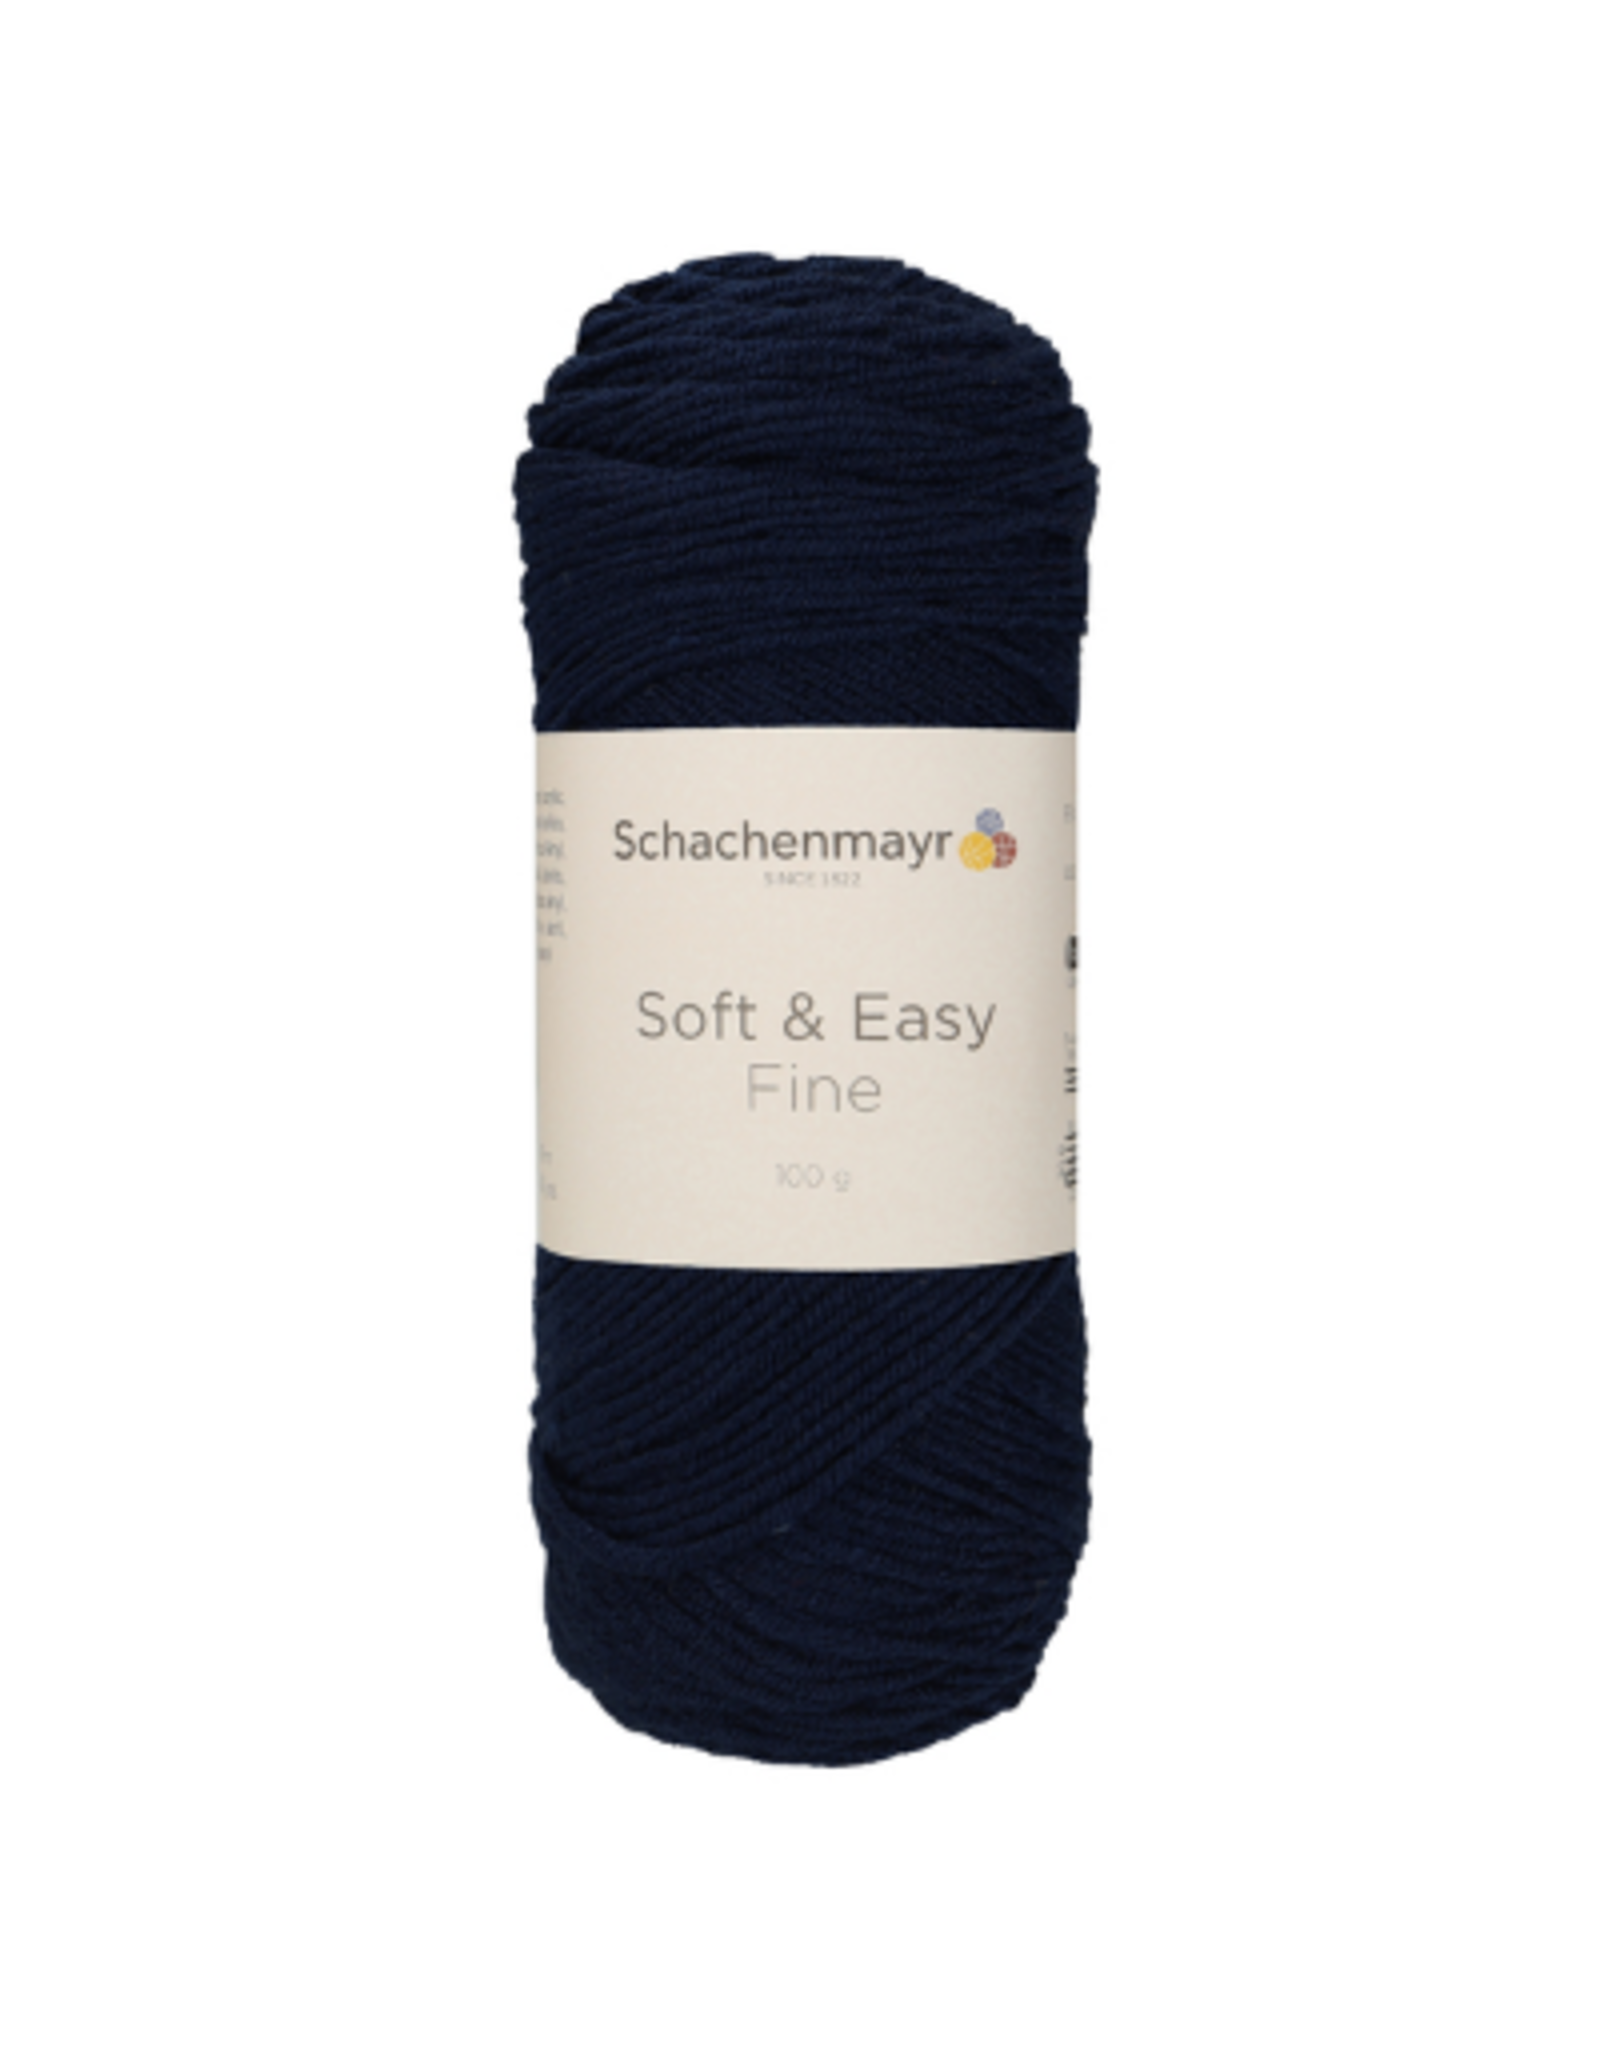 Schachenmayr Schachenmayr Soft & Easy fine 50